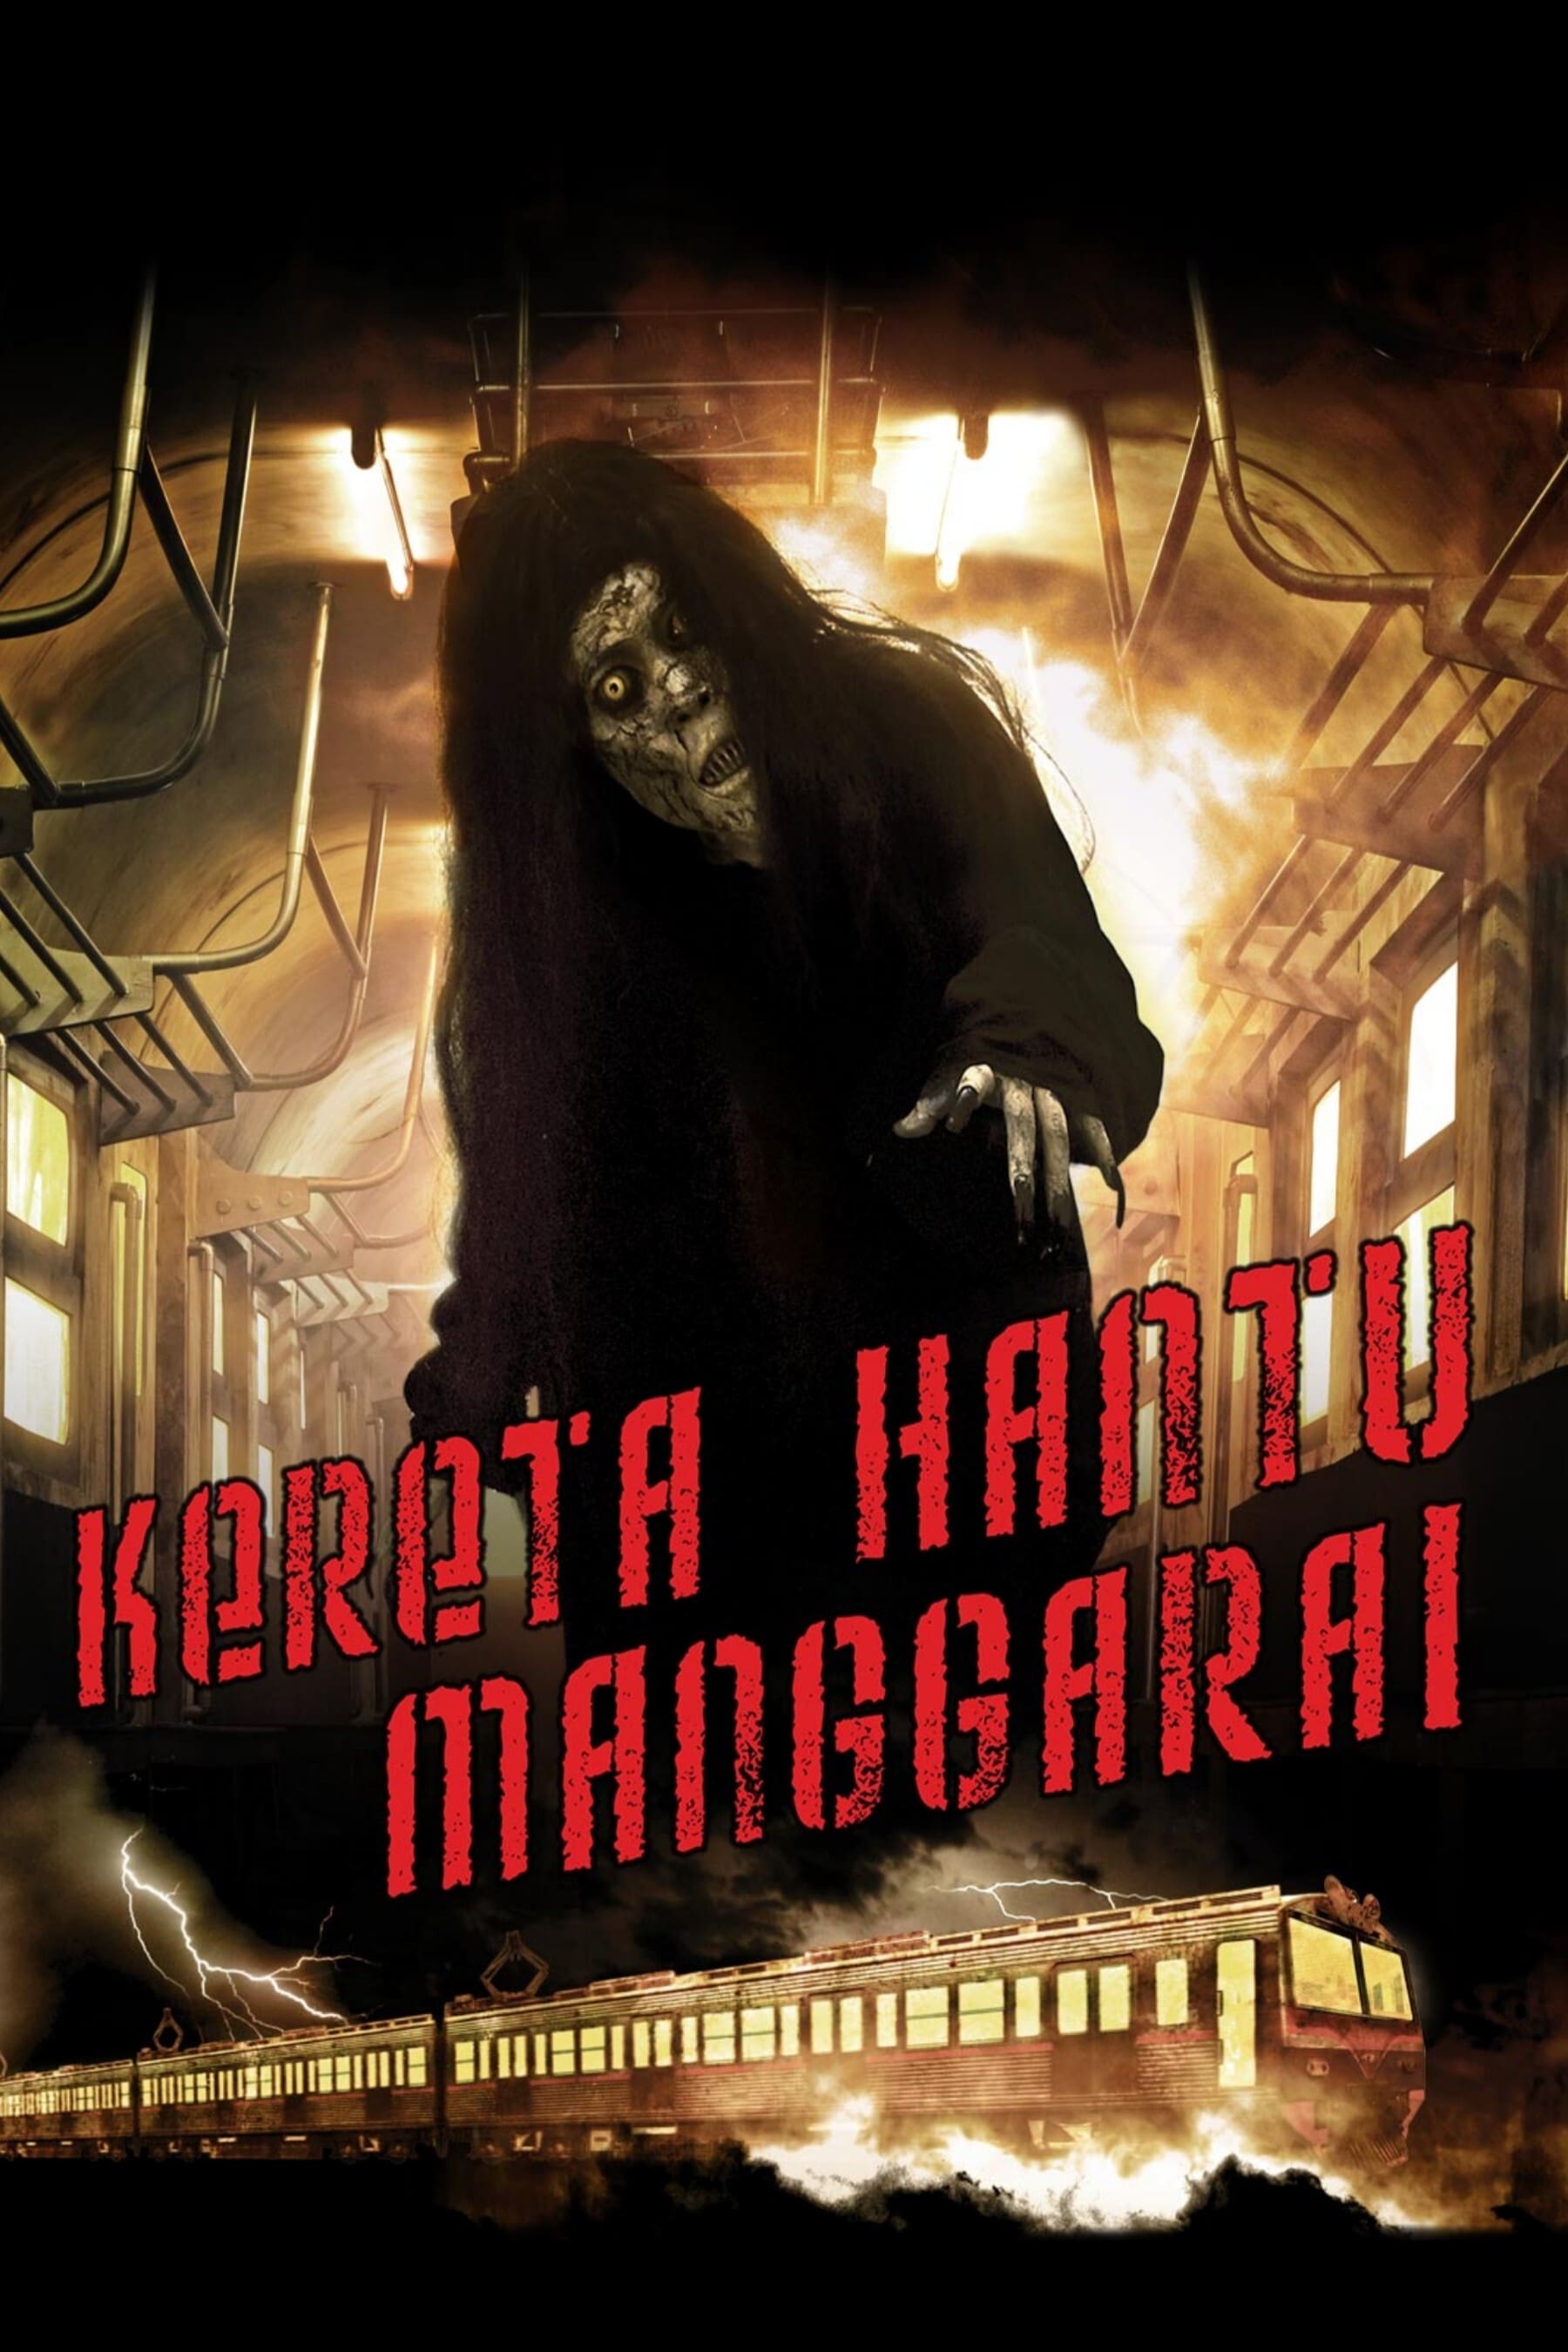 The Ghost Train of Manggarai (2008)